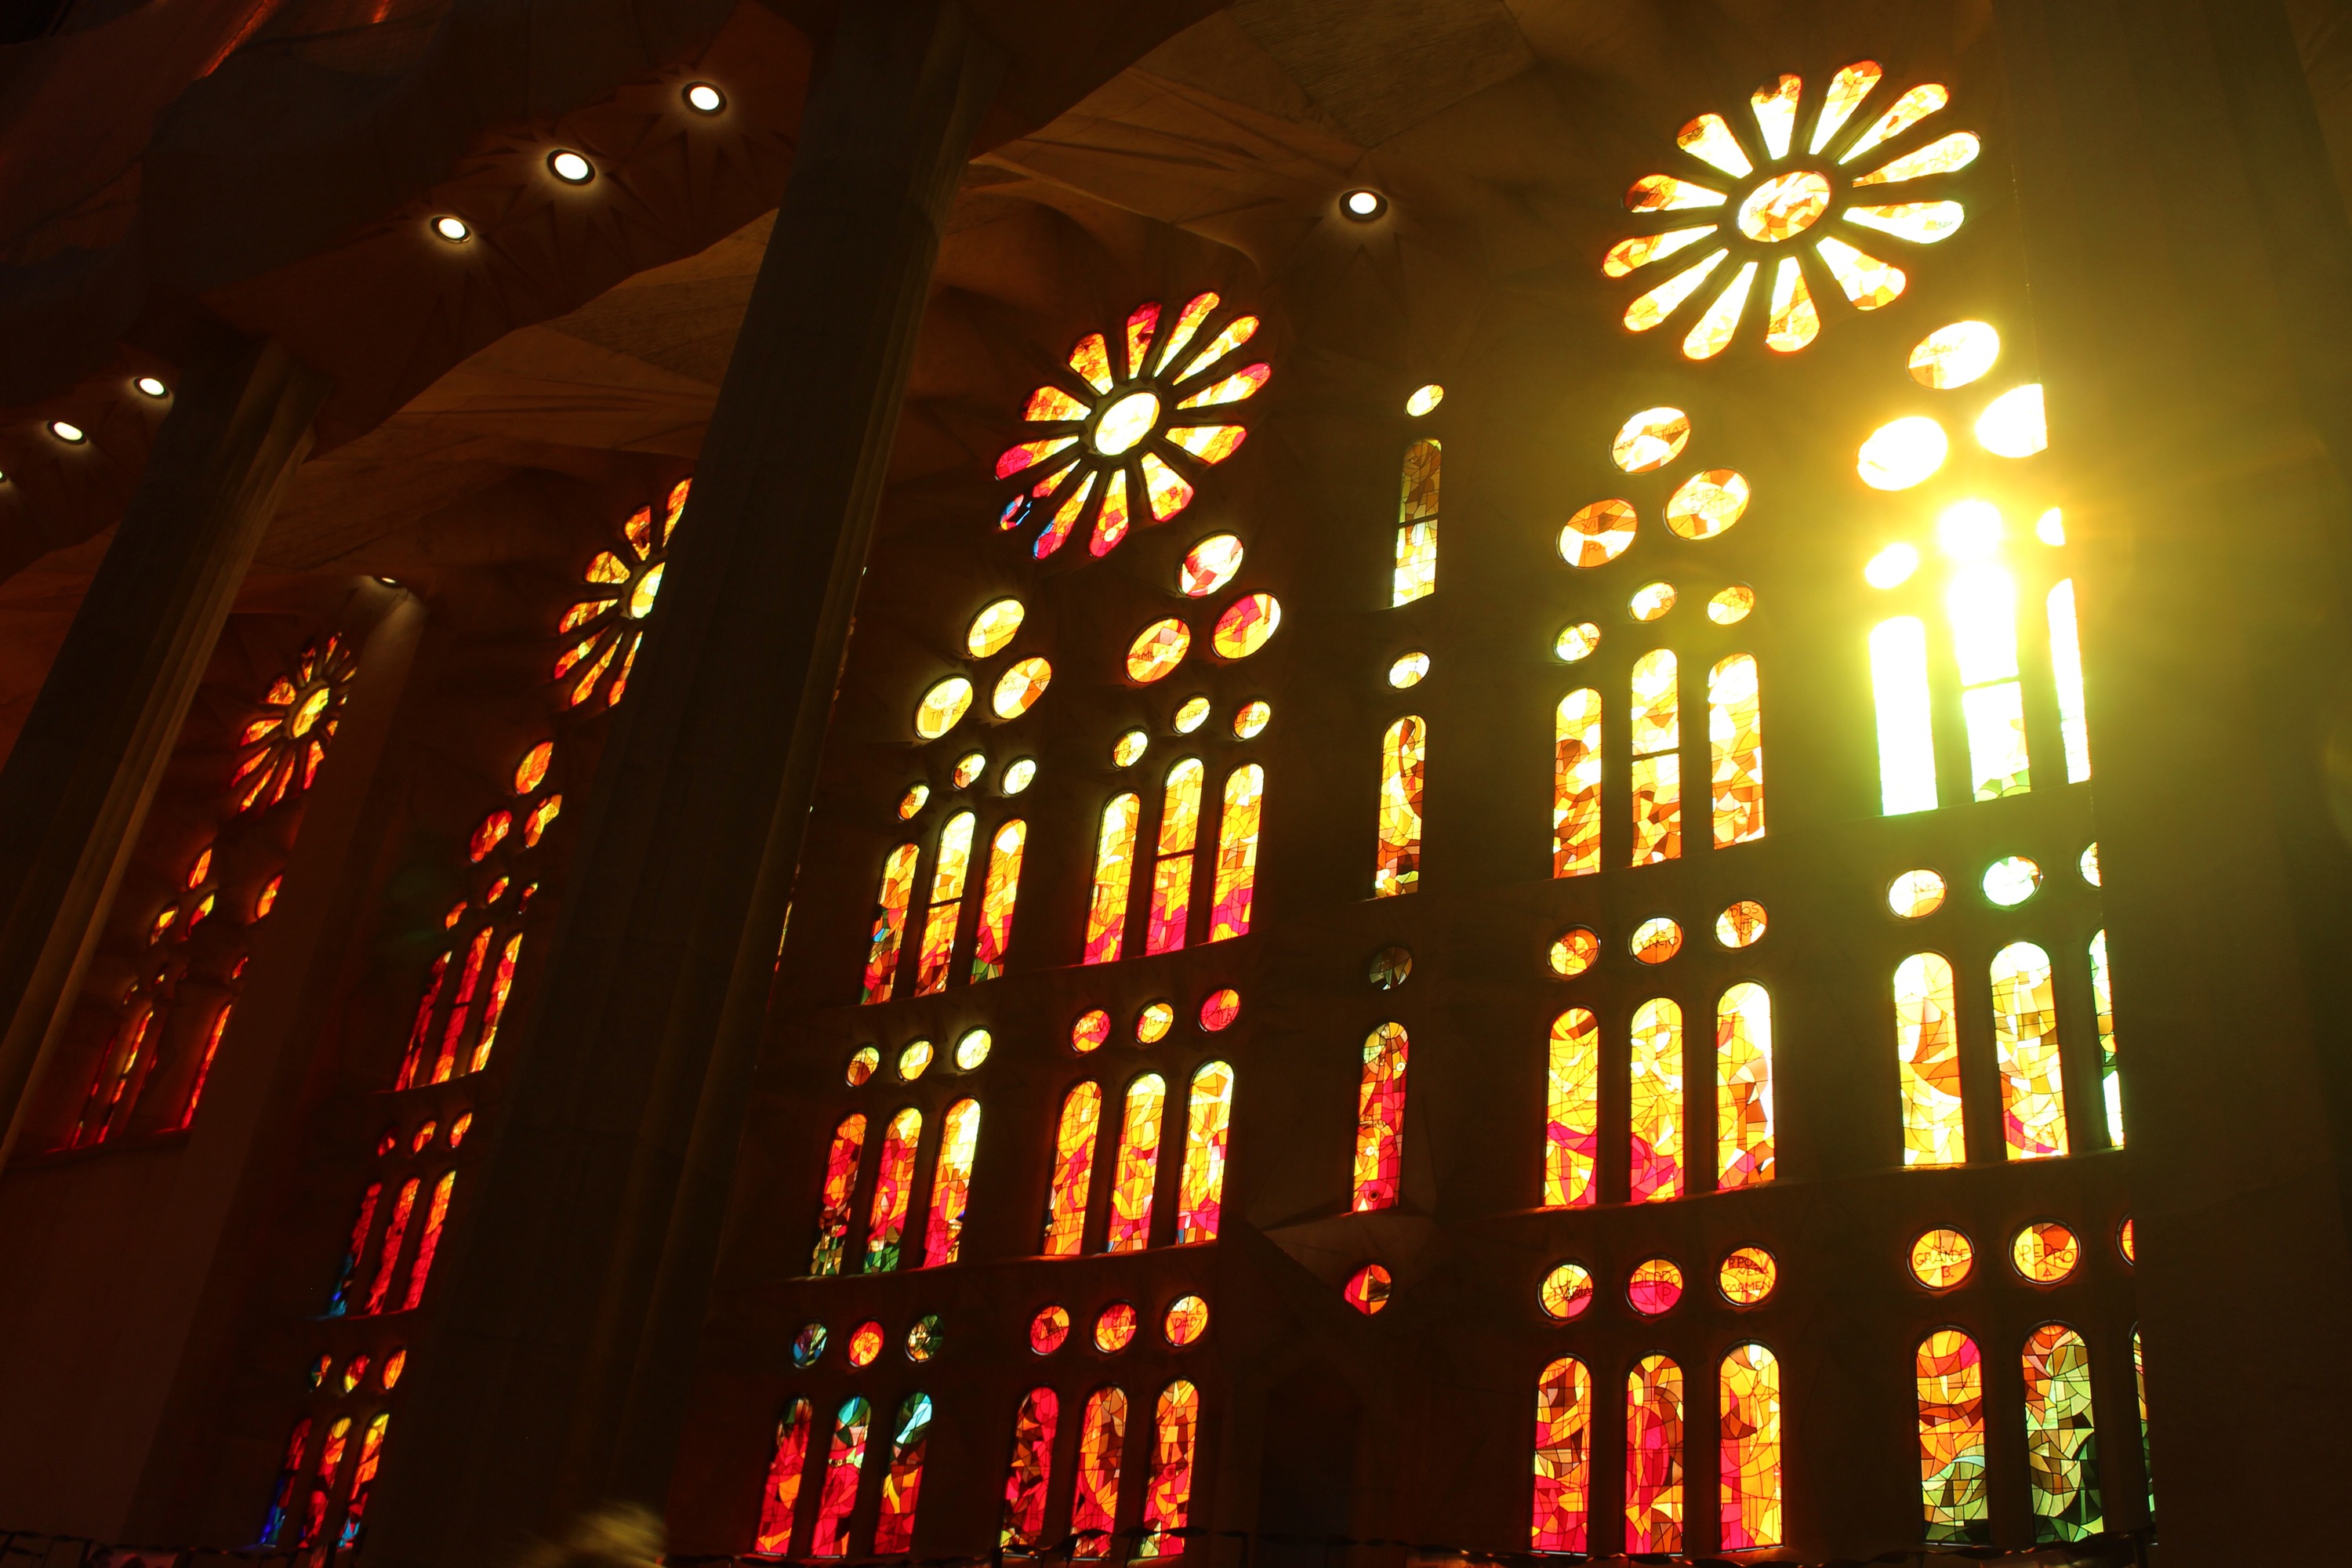 Color from windows in Sagrada Familia in Barcelona, Spain